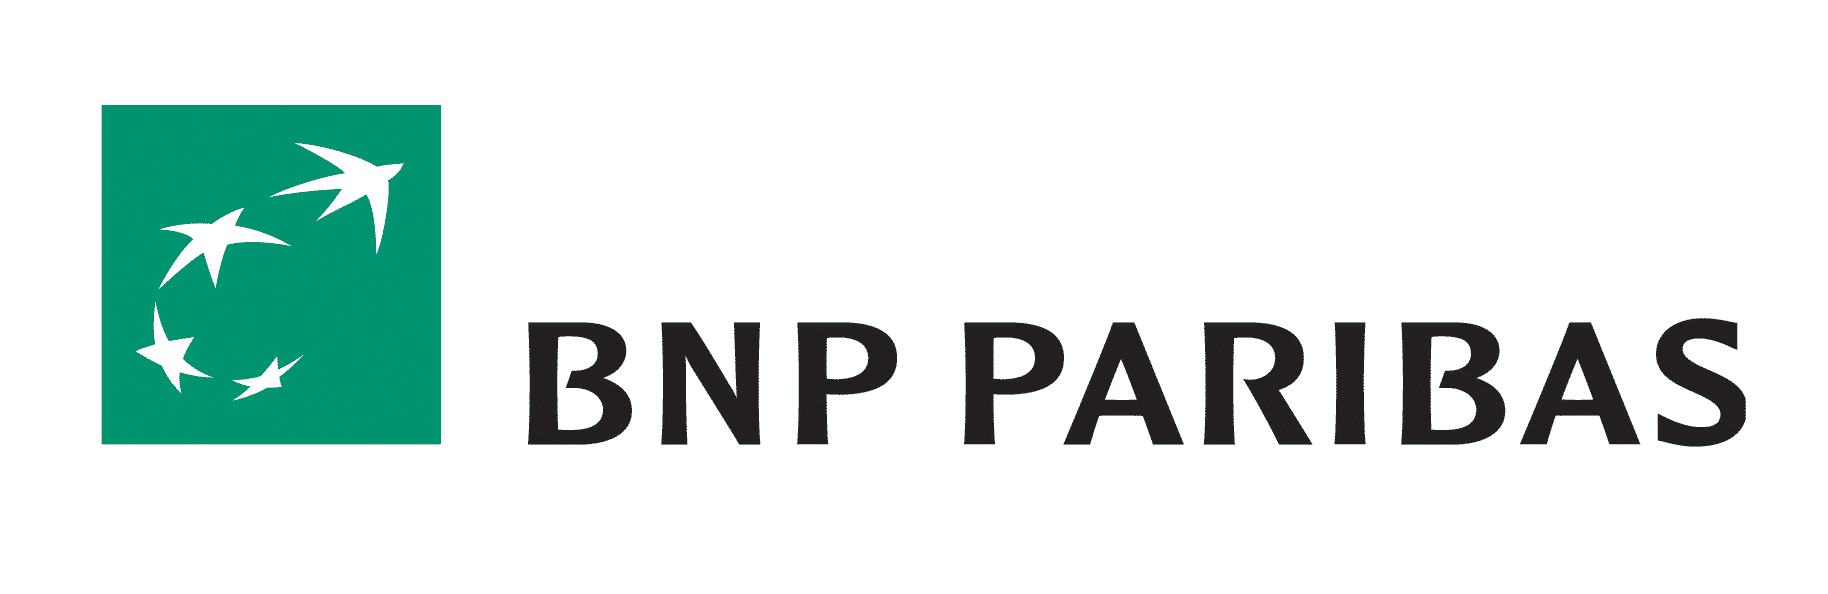 BNP Paribas Logo - Bnp Paribas Logo